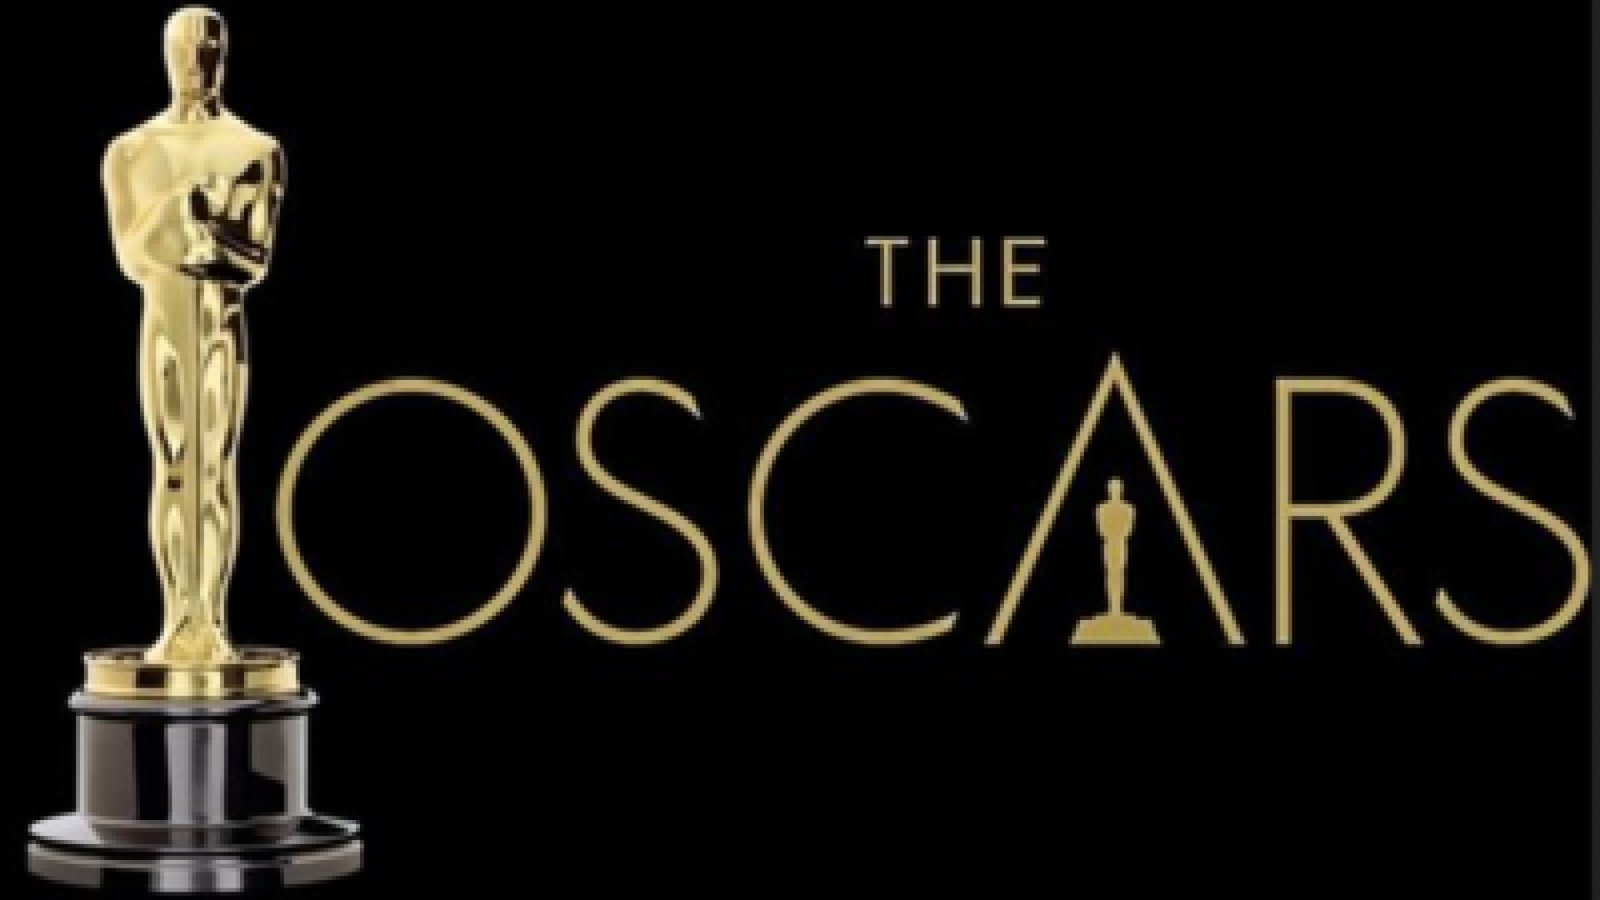 Oscars 2021